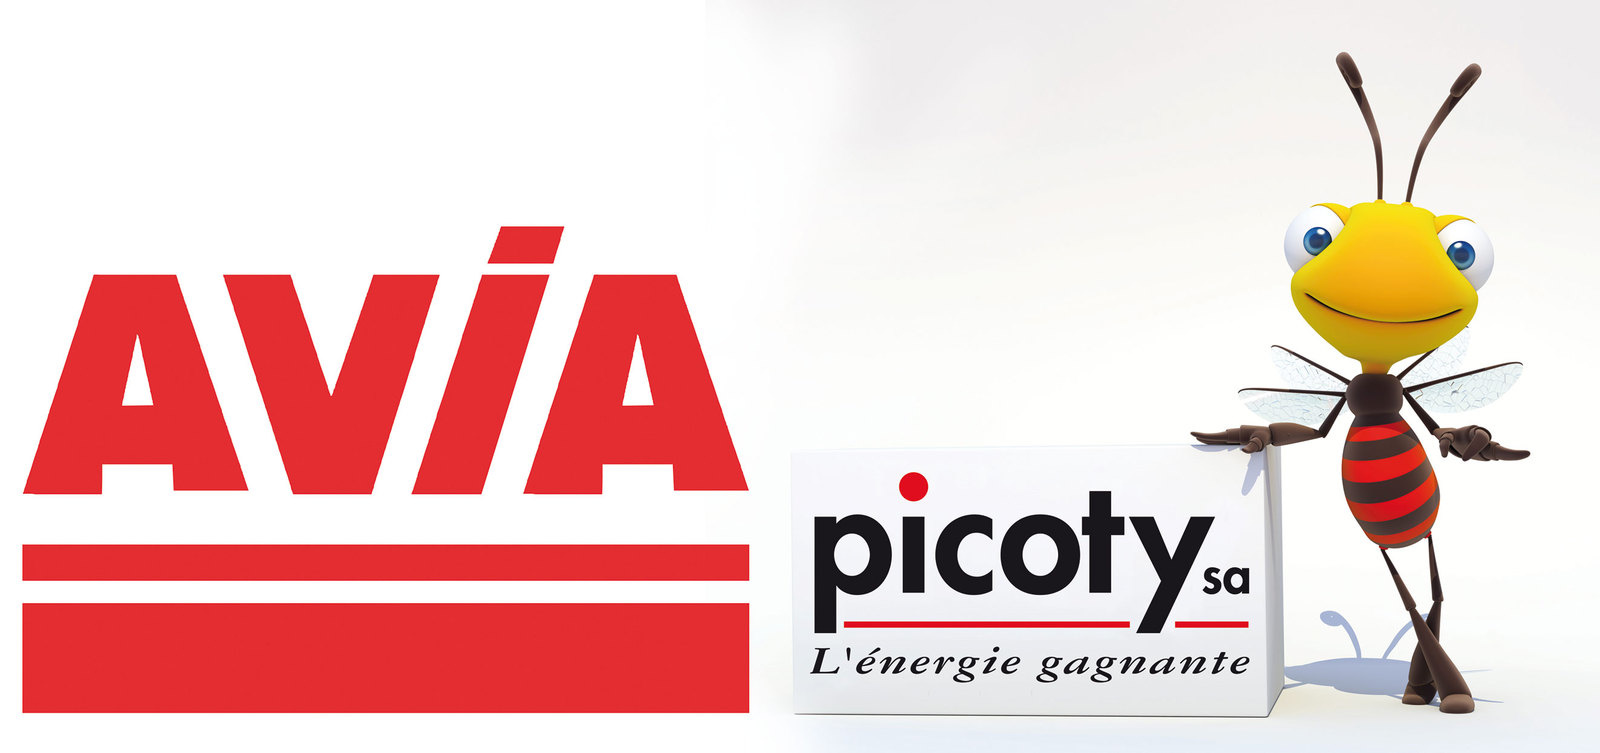 Logo picoty